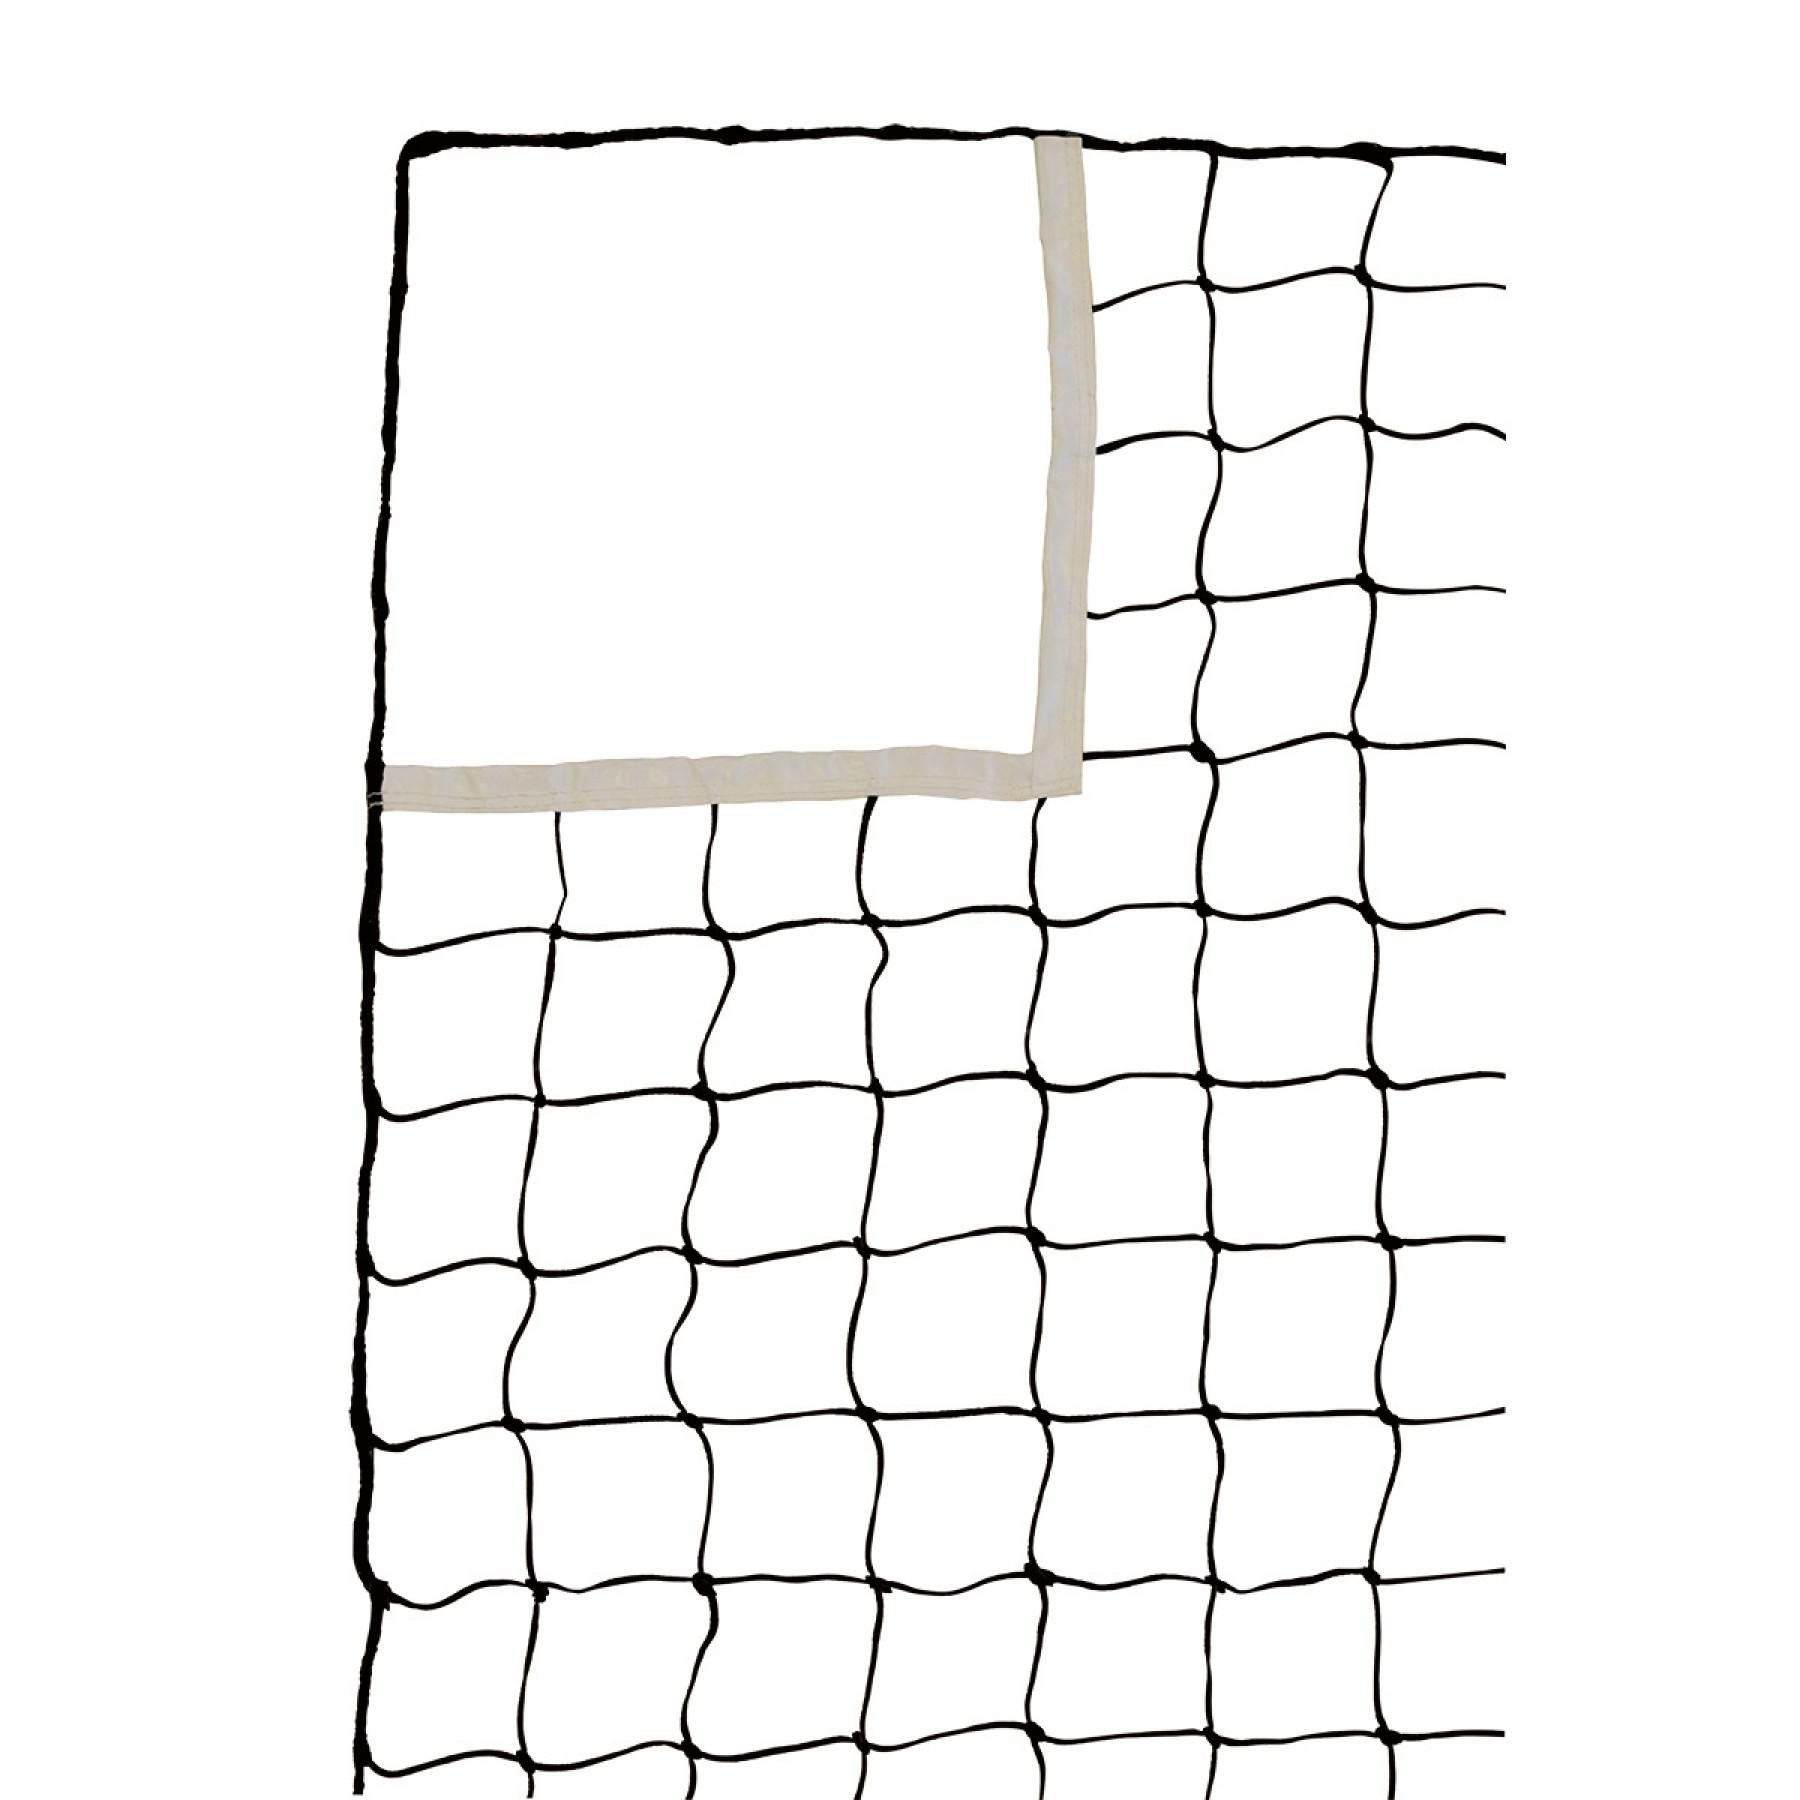 Handballnetz mit Öffnungen an den 4 Ecken 3mm Einfachmasche 100 Sporti France